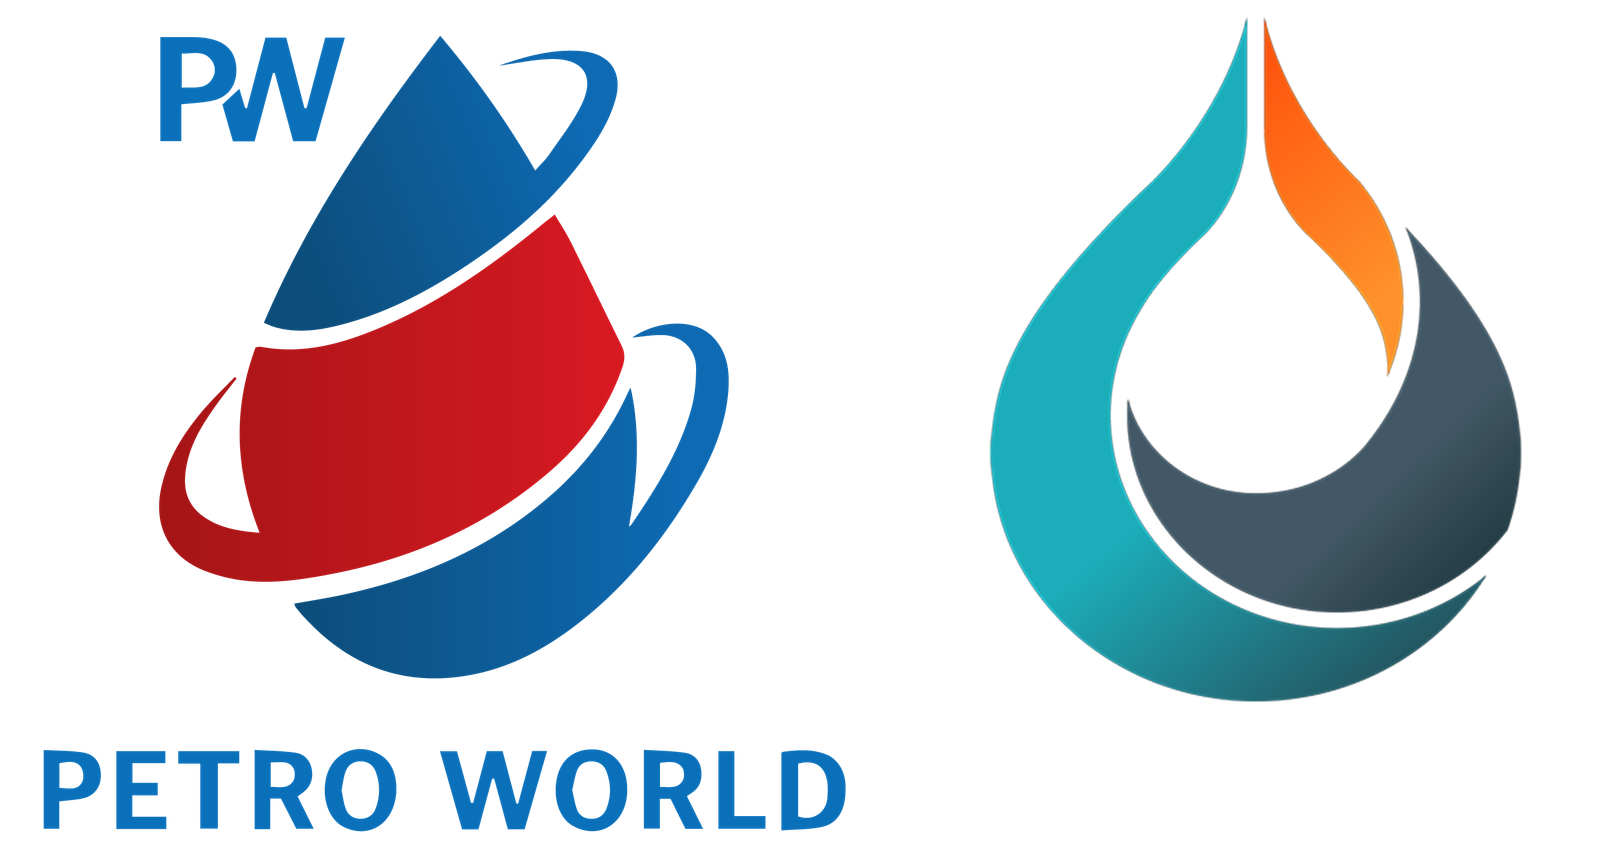 VKB Petroleum